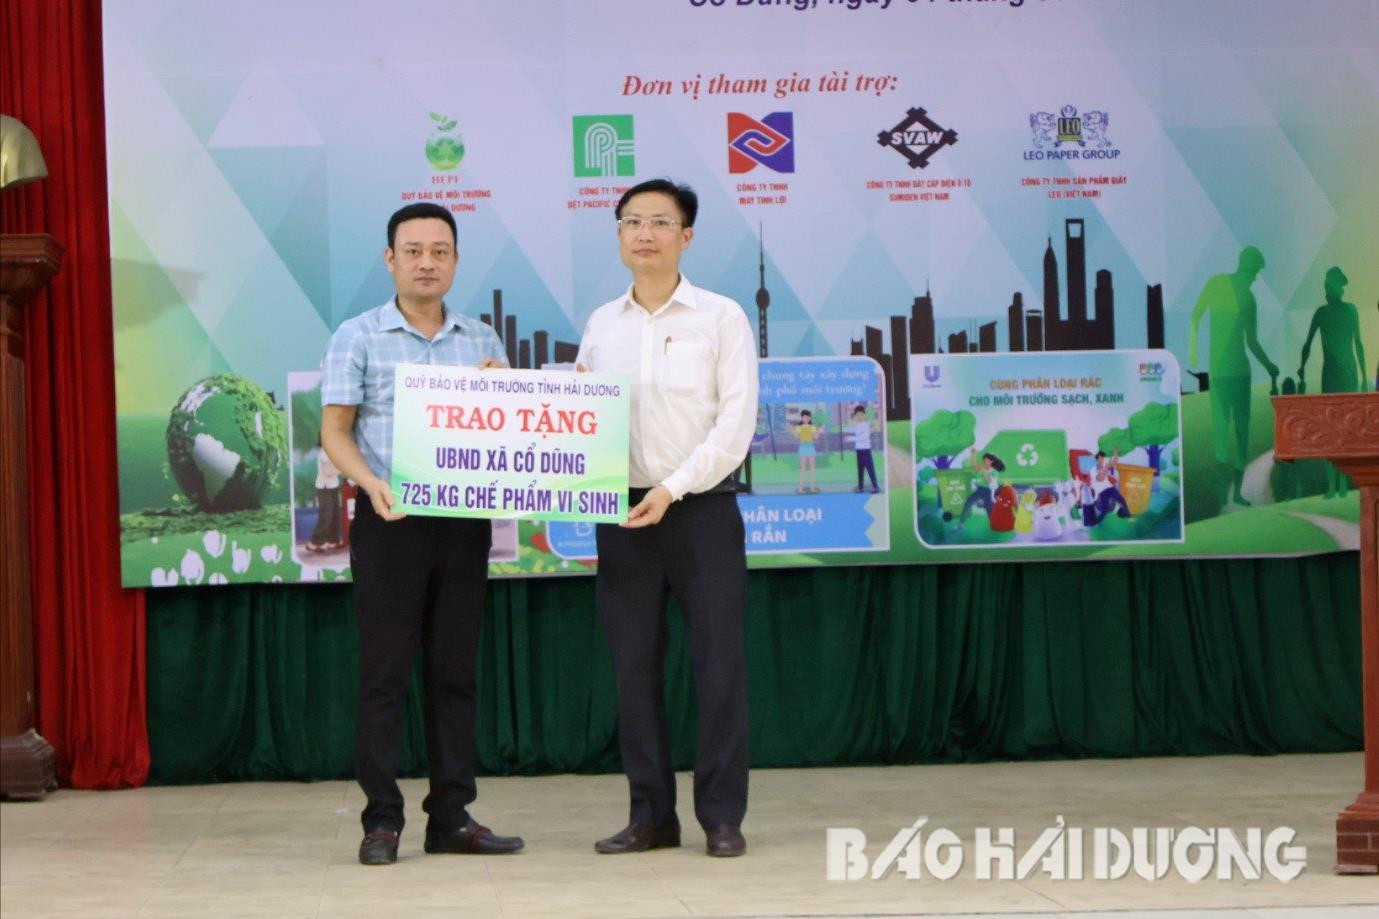  Đại diện Quỹ Bảo vệ môi trường tỉnh Hải Dương trao tặng UBND xã Cổ Dũng 725 kg chế phẩm vi sinh